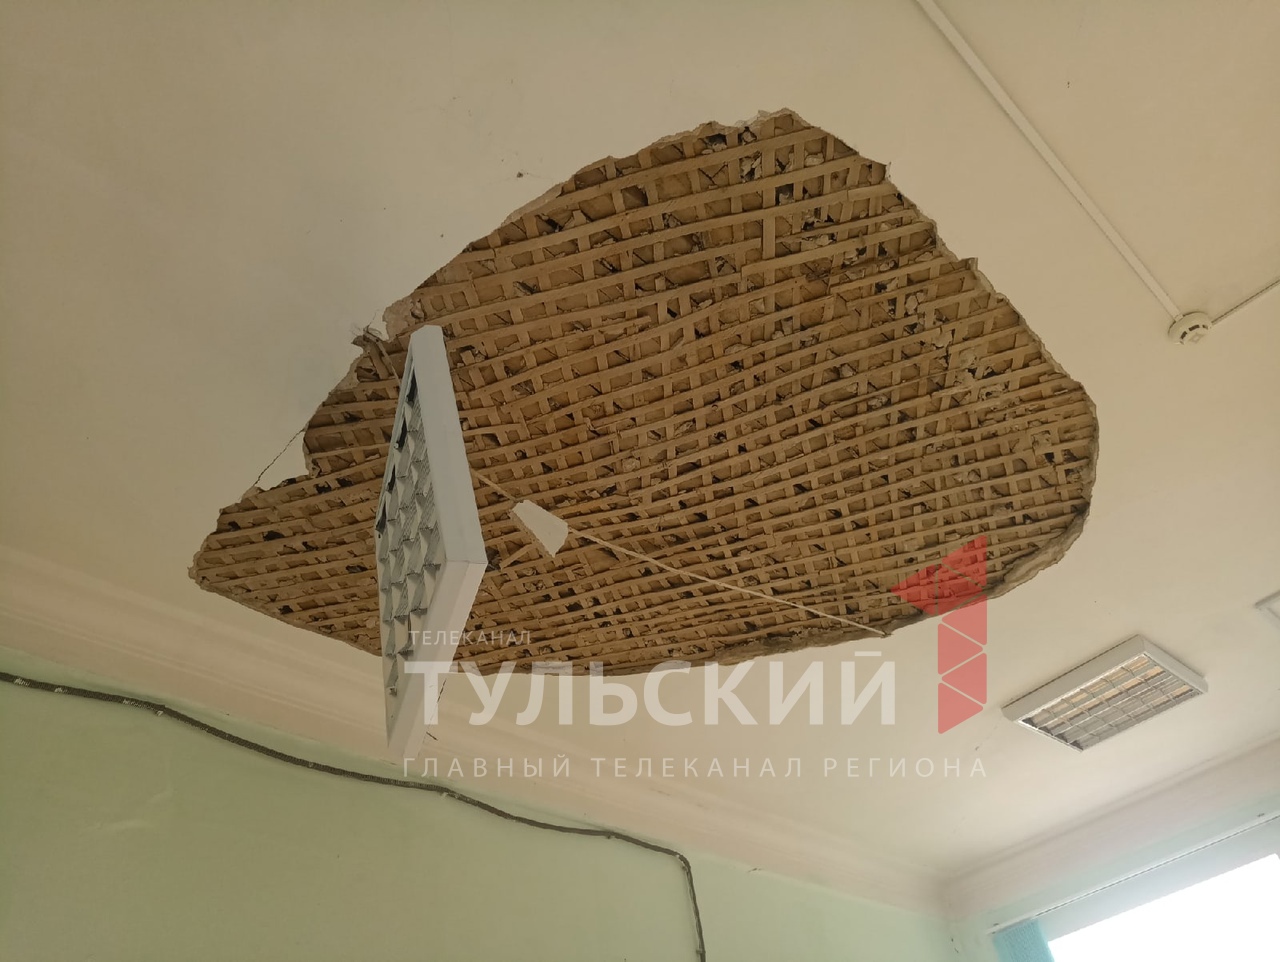 В школе в поселке Барсуки обрушился потолок